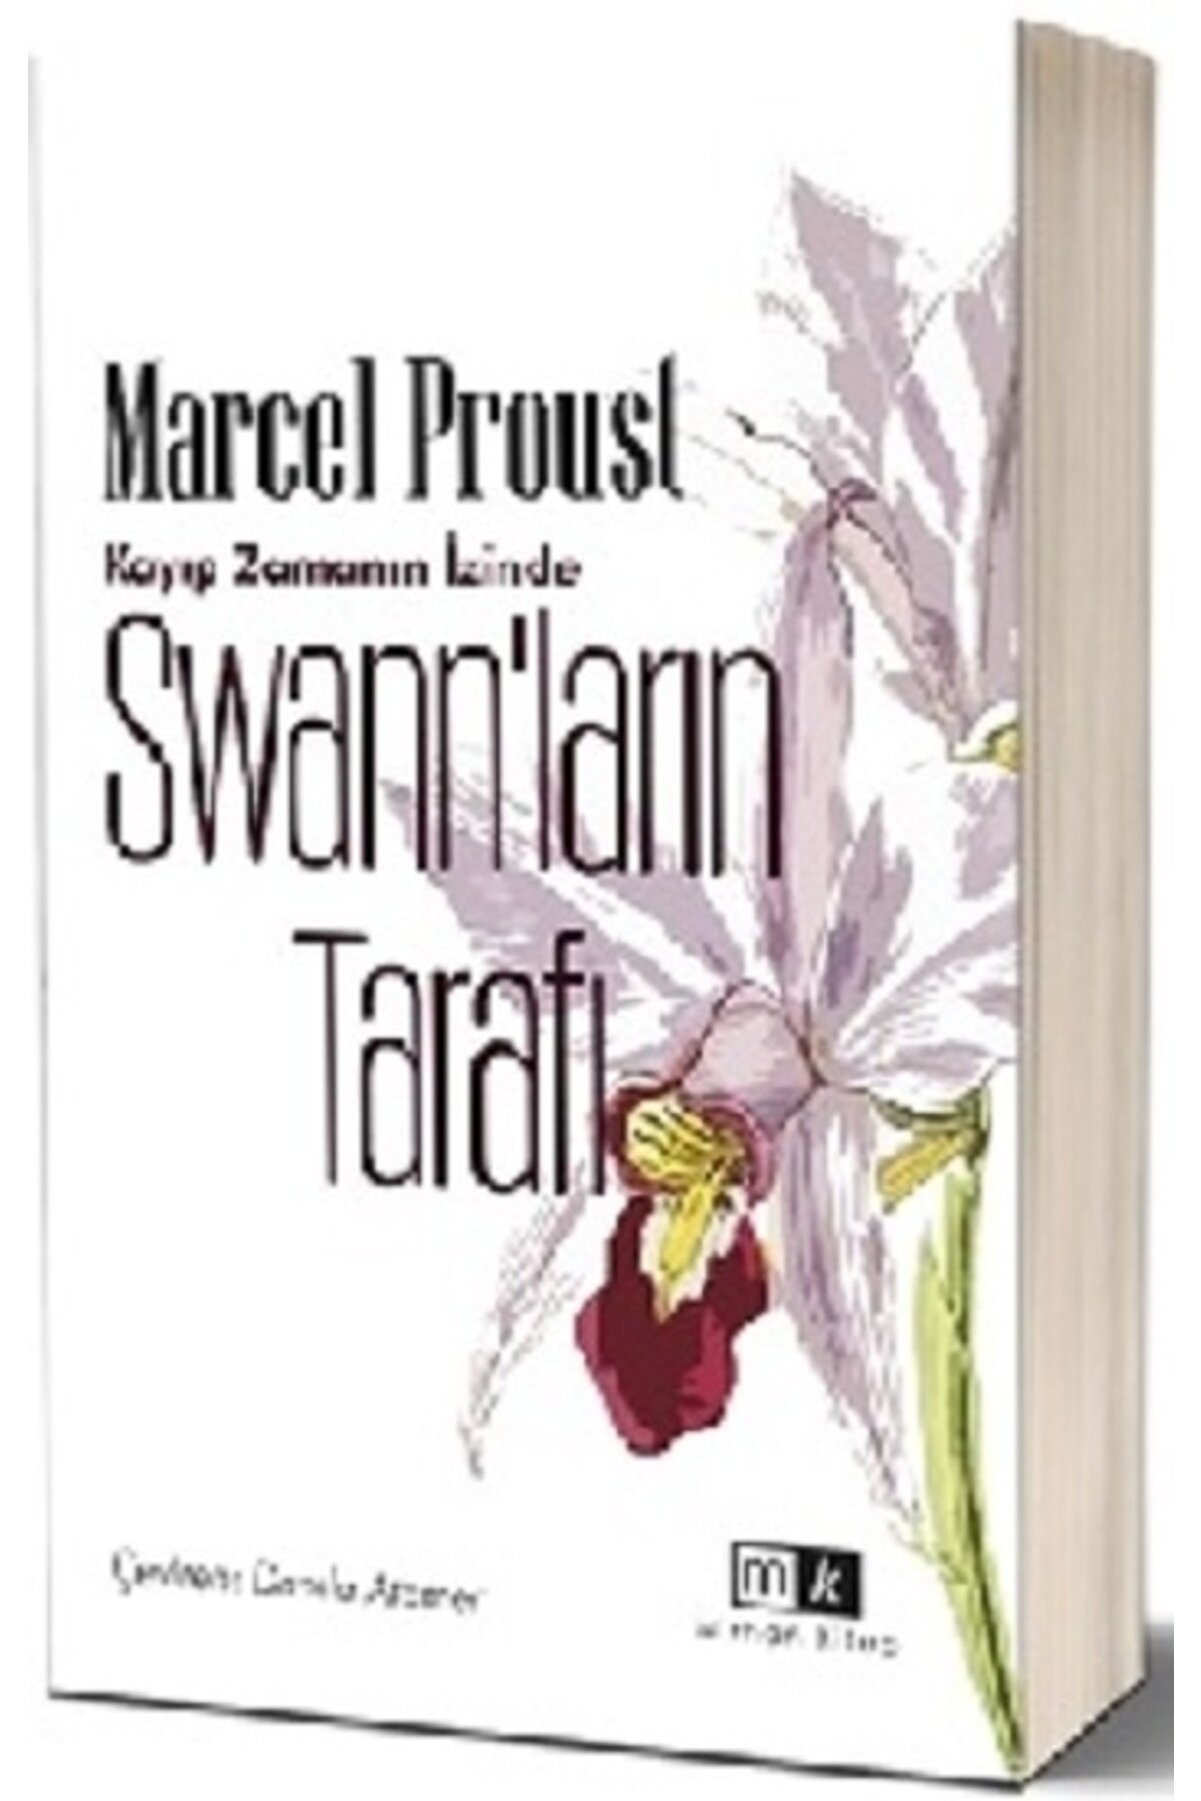 Mirhan Kitap Swann’ların Tarafı – Kayıp Zamanın Izinde 1.kitap & Marcel Proust